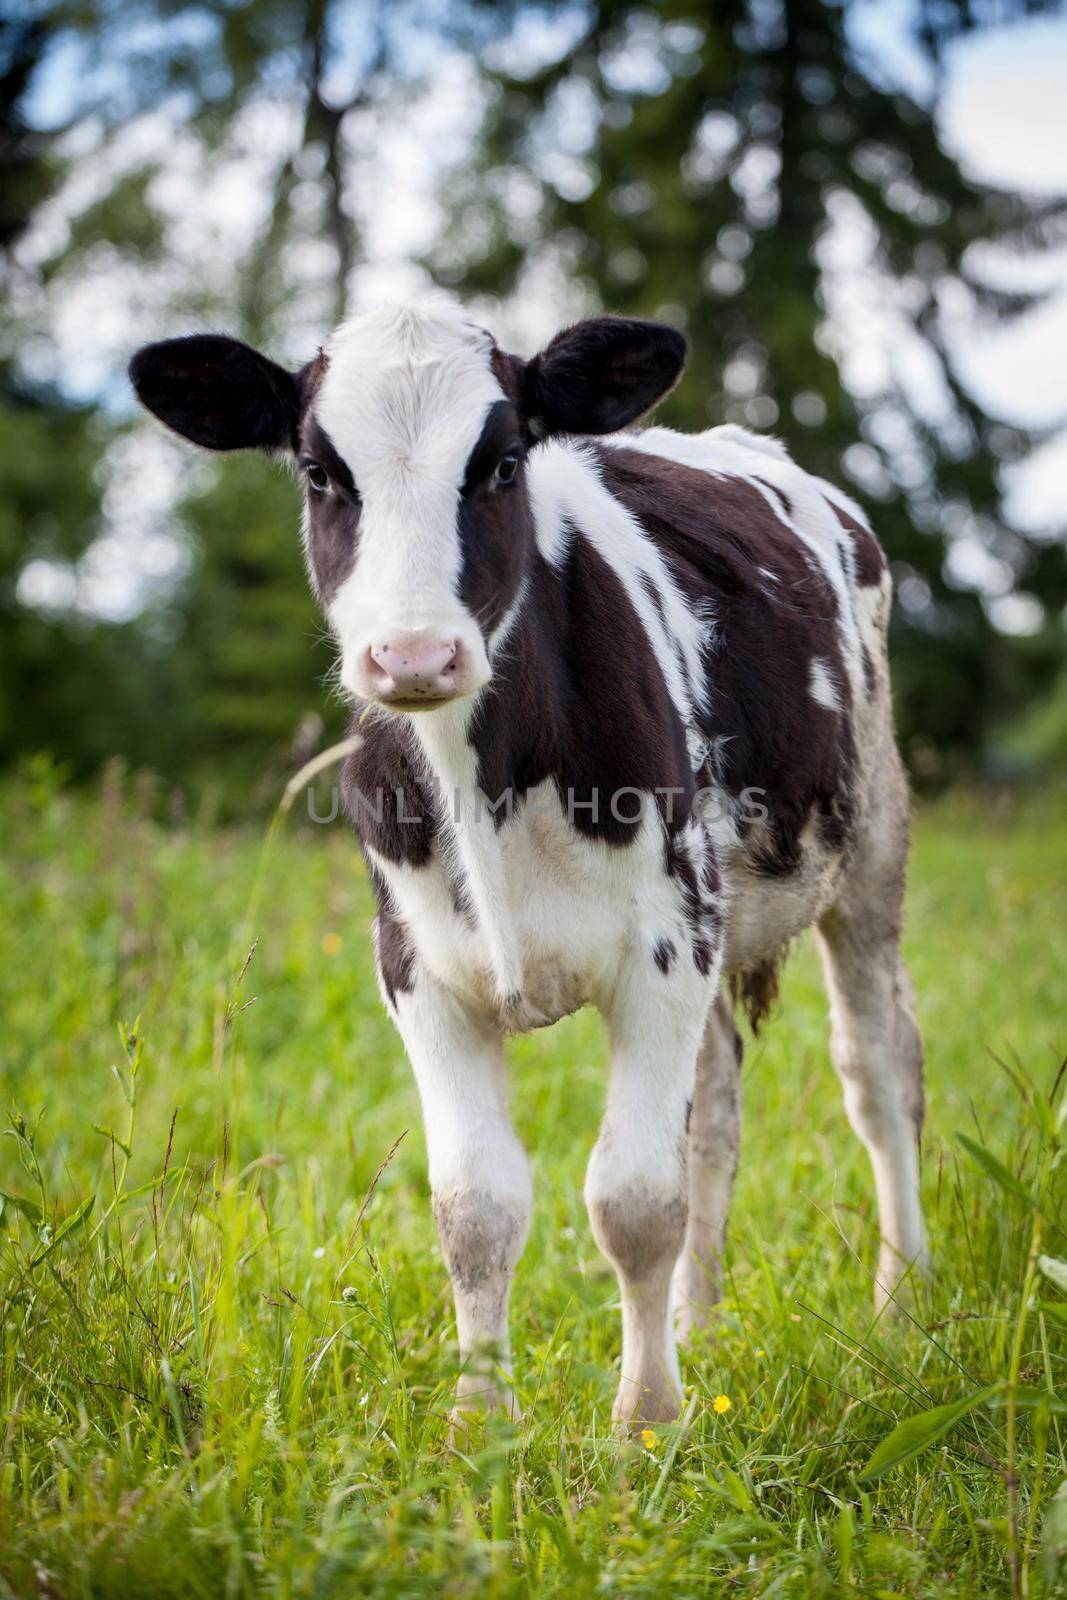 Beauty small Newborn calf on green grass